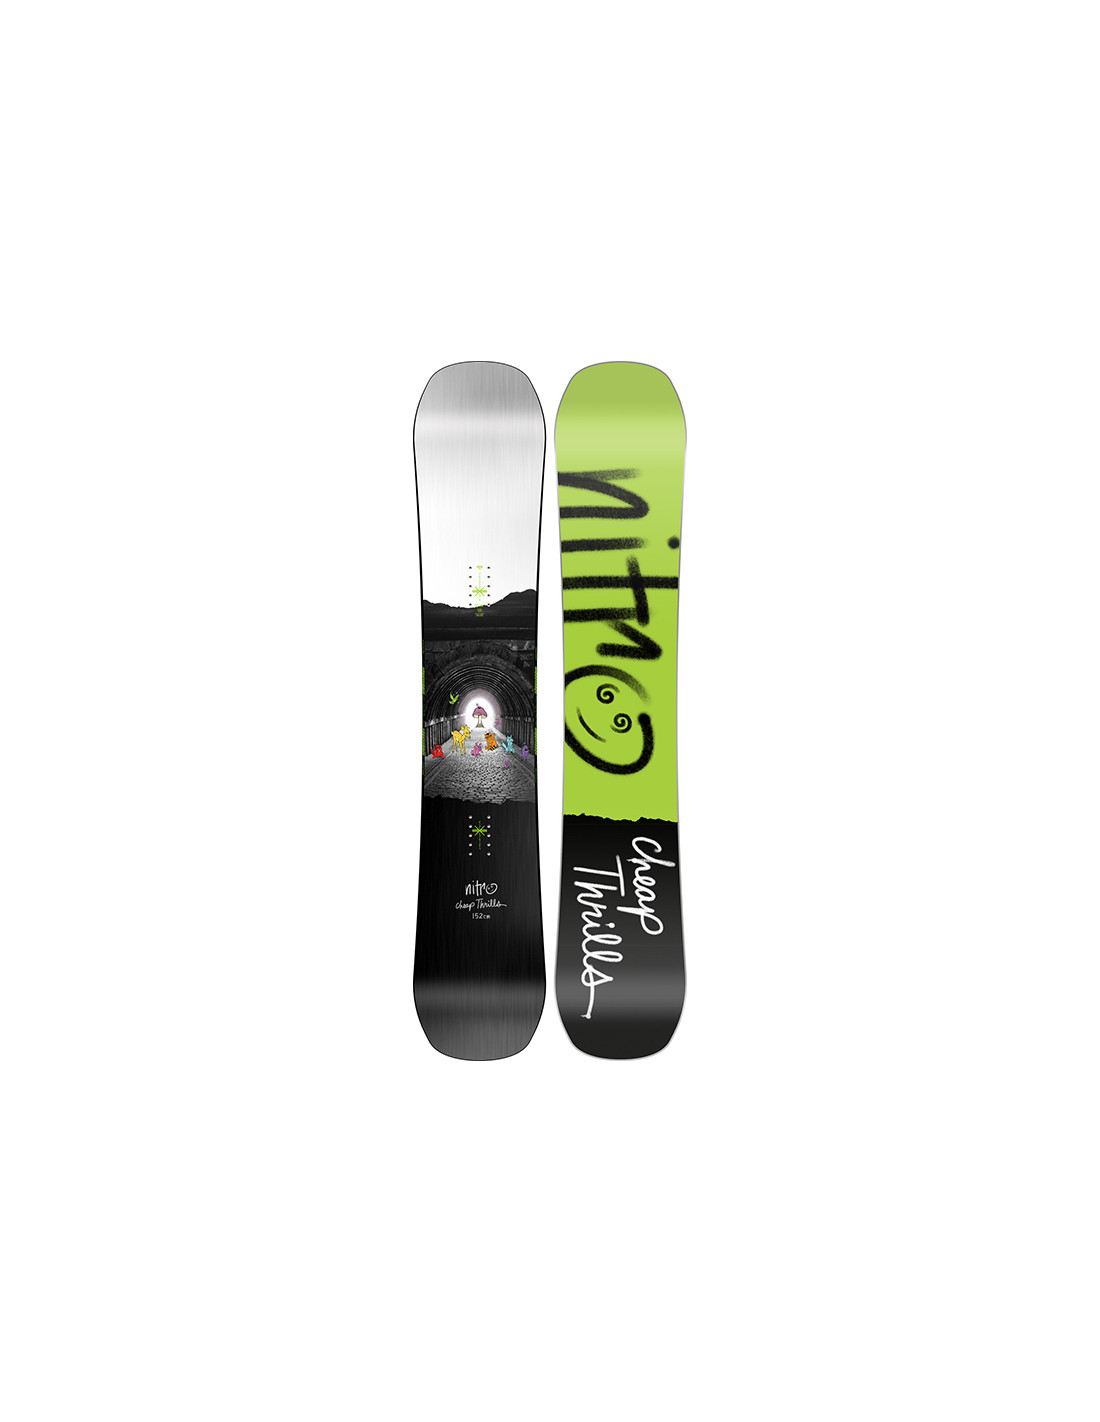 Tablas Snowboard Hombre Nitro Snowboard Dropout con Ofertas en Carrefour